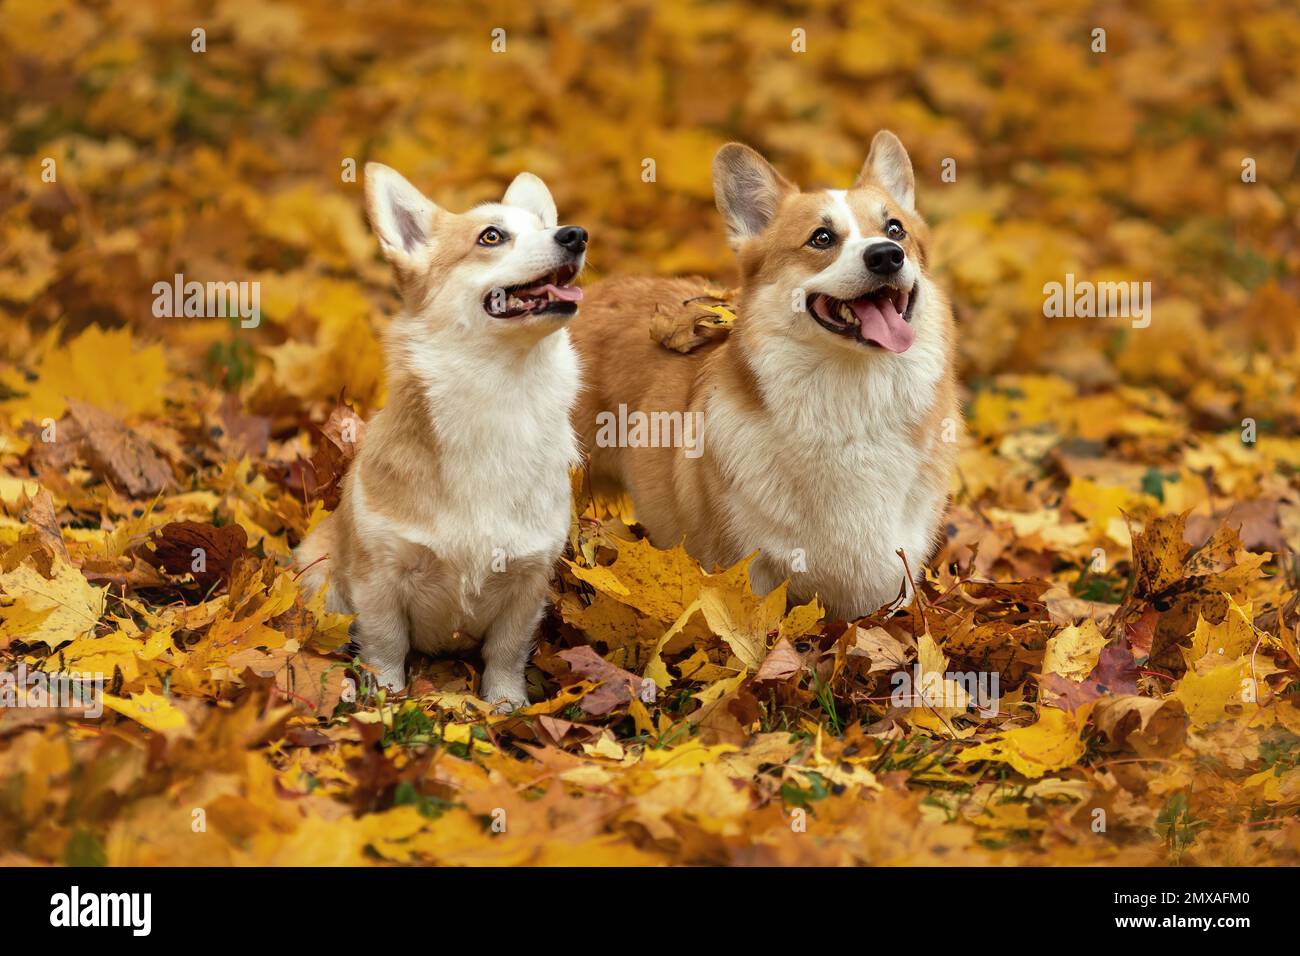 Deux jeunes chiens de corgi gallois pembroke se reproduisent assis ensemble sur des feuilles mortes jaunes et souriant à la nature automnale Banque D'Images